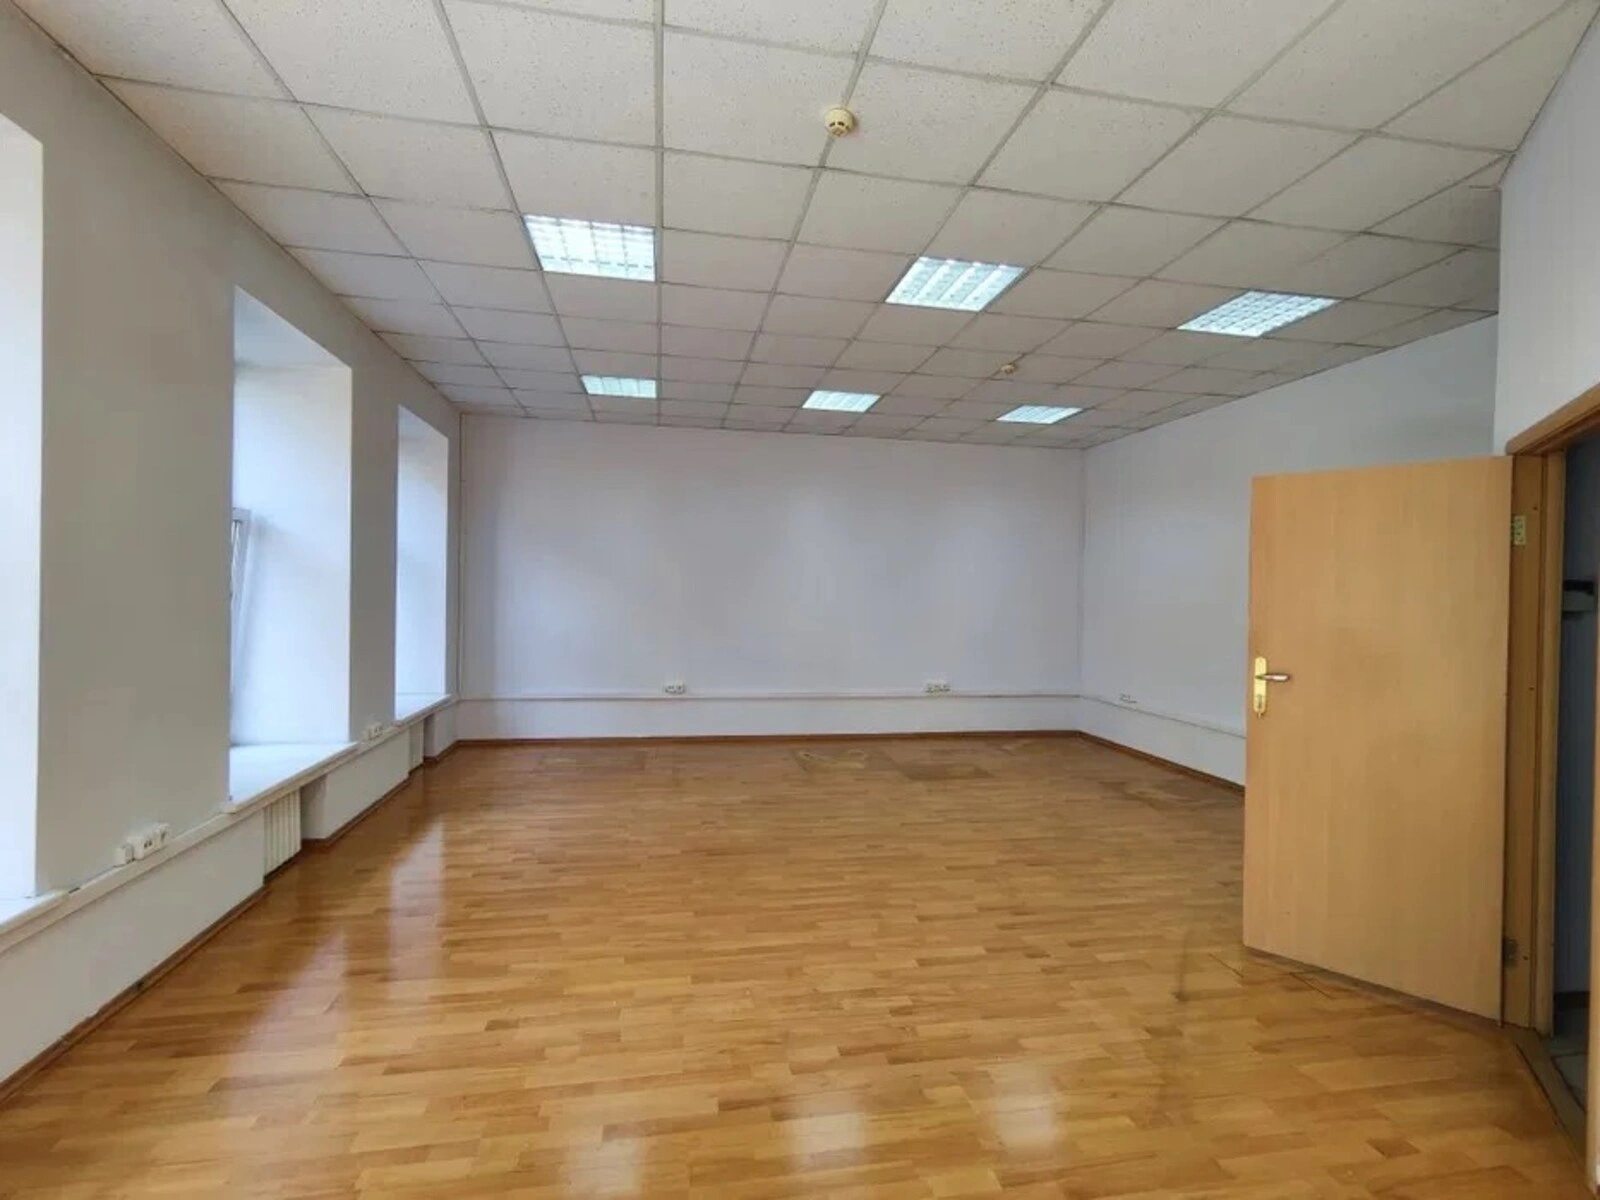 Сдам офис 54 метра на ул.Сечевых Стрельцов.